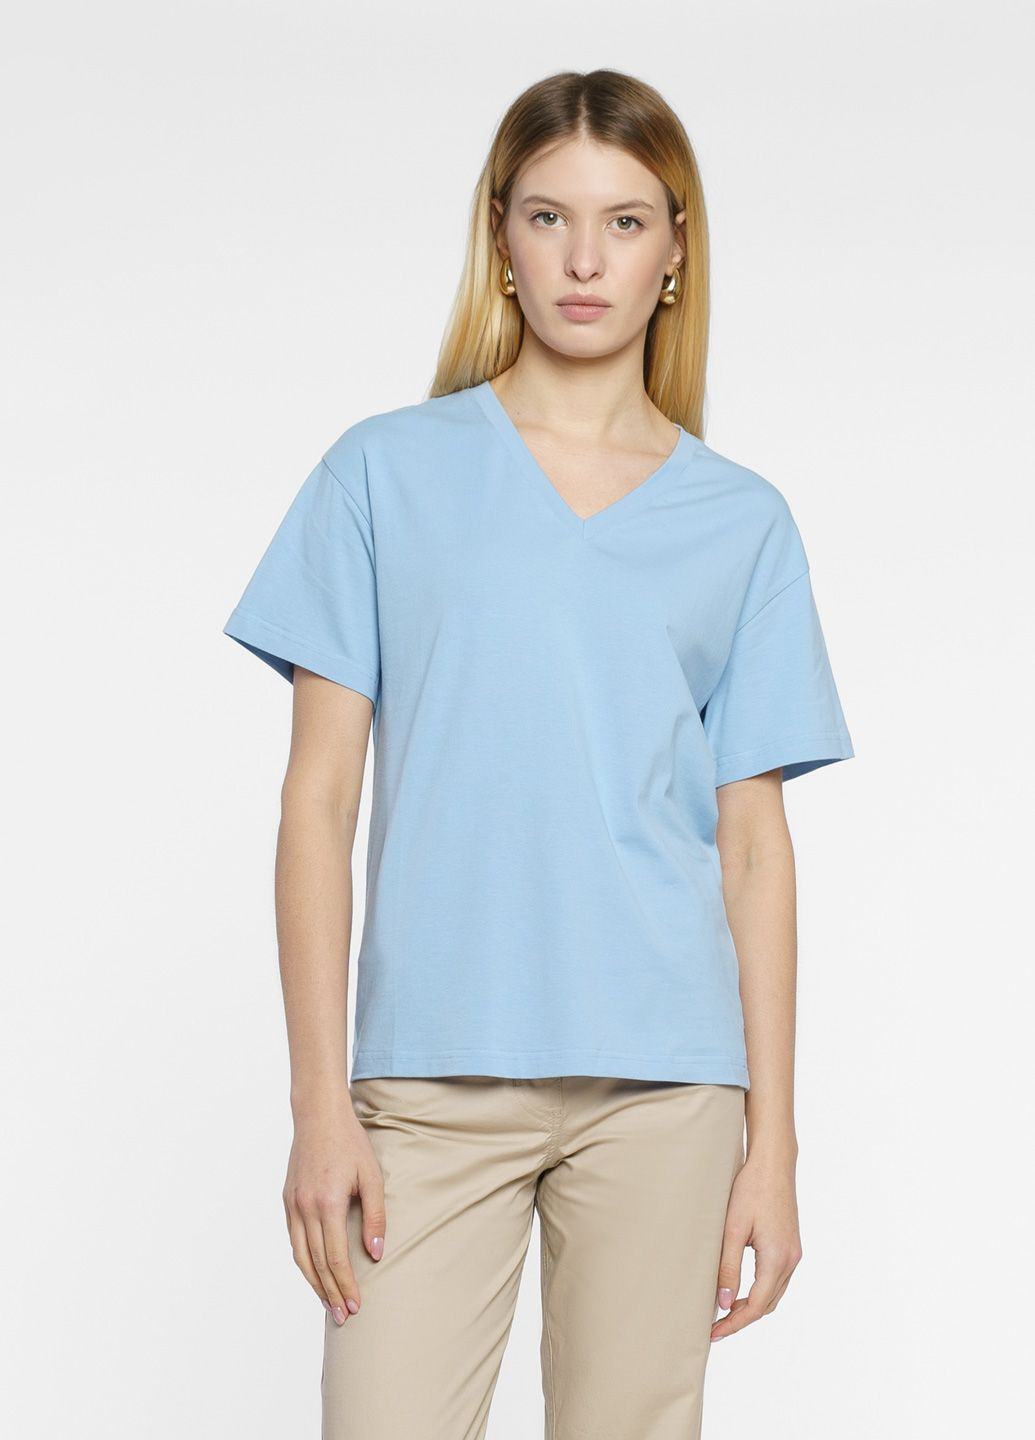 Голубая летняя футболка женская голубая Arber T-shirt W v-neck